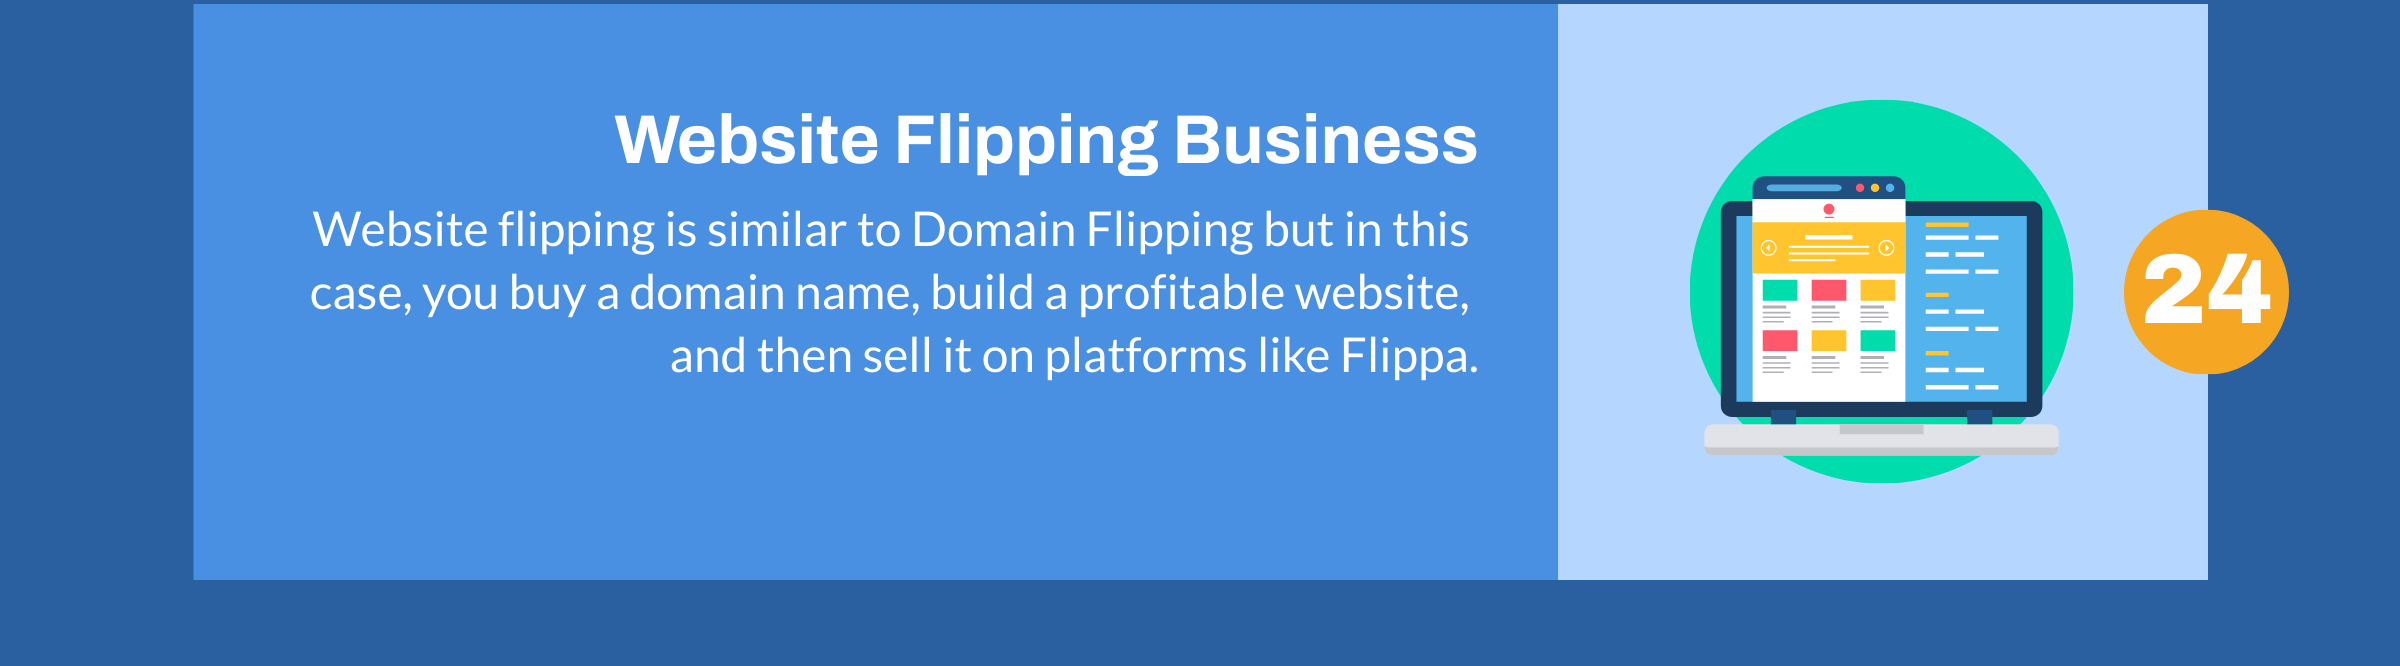 Bisnis Flipping Website